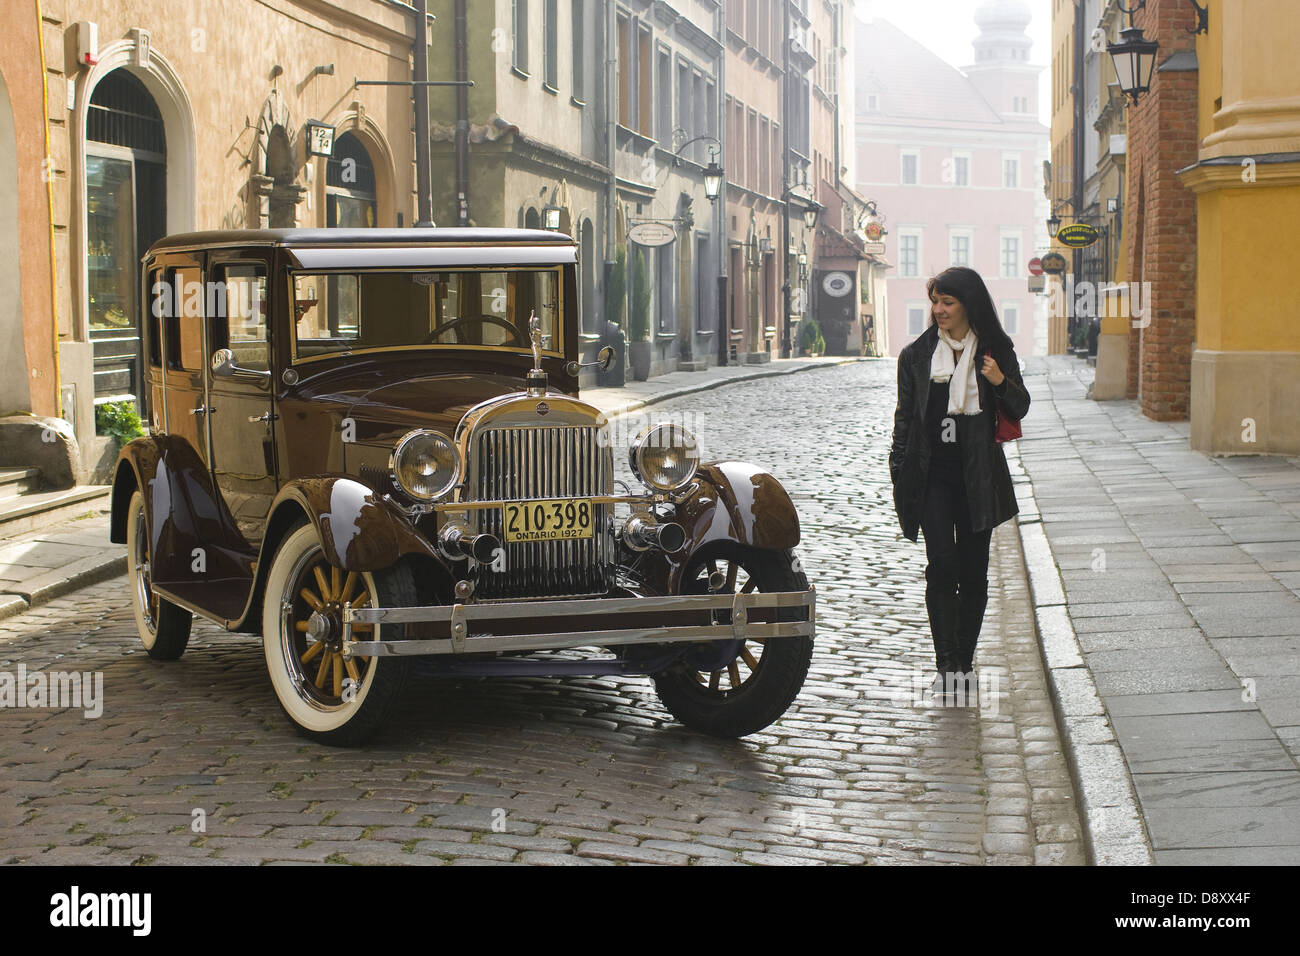 Oldtimer voiture Essex Super Six et jeune femme sur la vieille ville de Varsovie, Pologne Banque D'Images